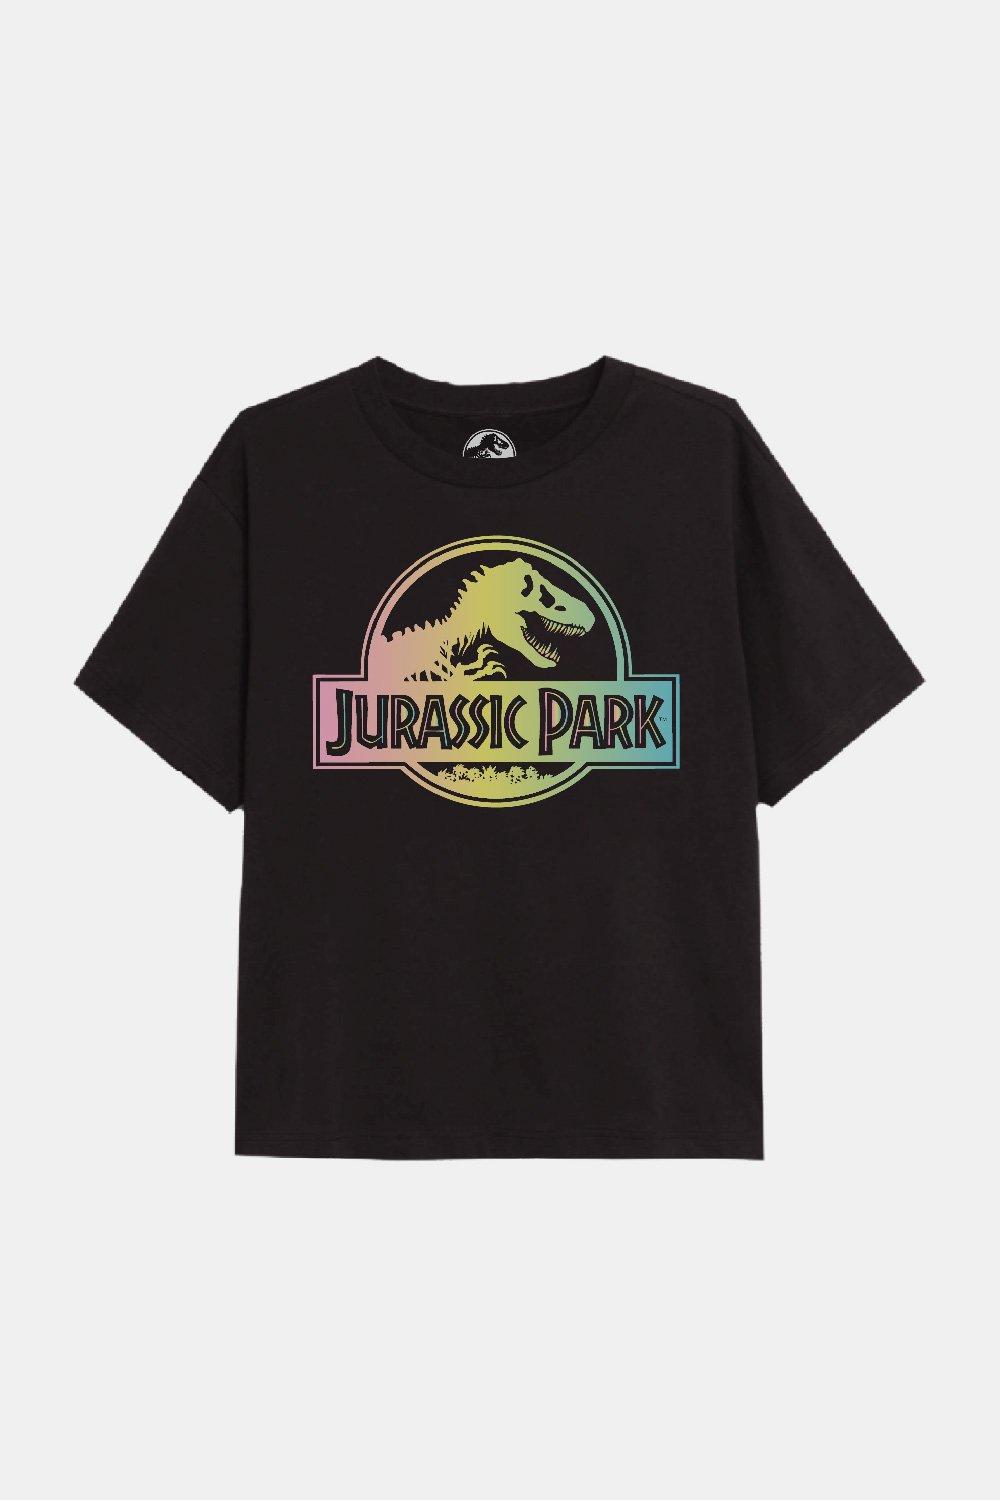 опыты занимательная биология питомец из юрского периода Футболка для девочек с градиентным логотипом Jurassic Park, черный